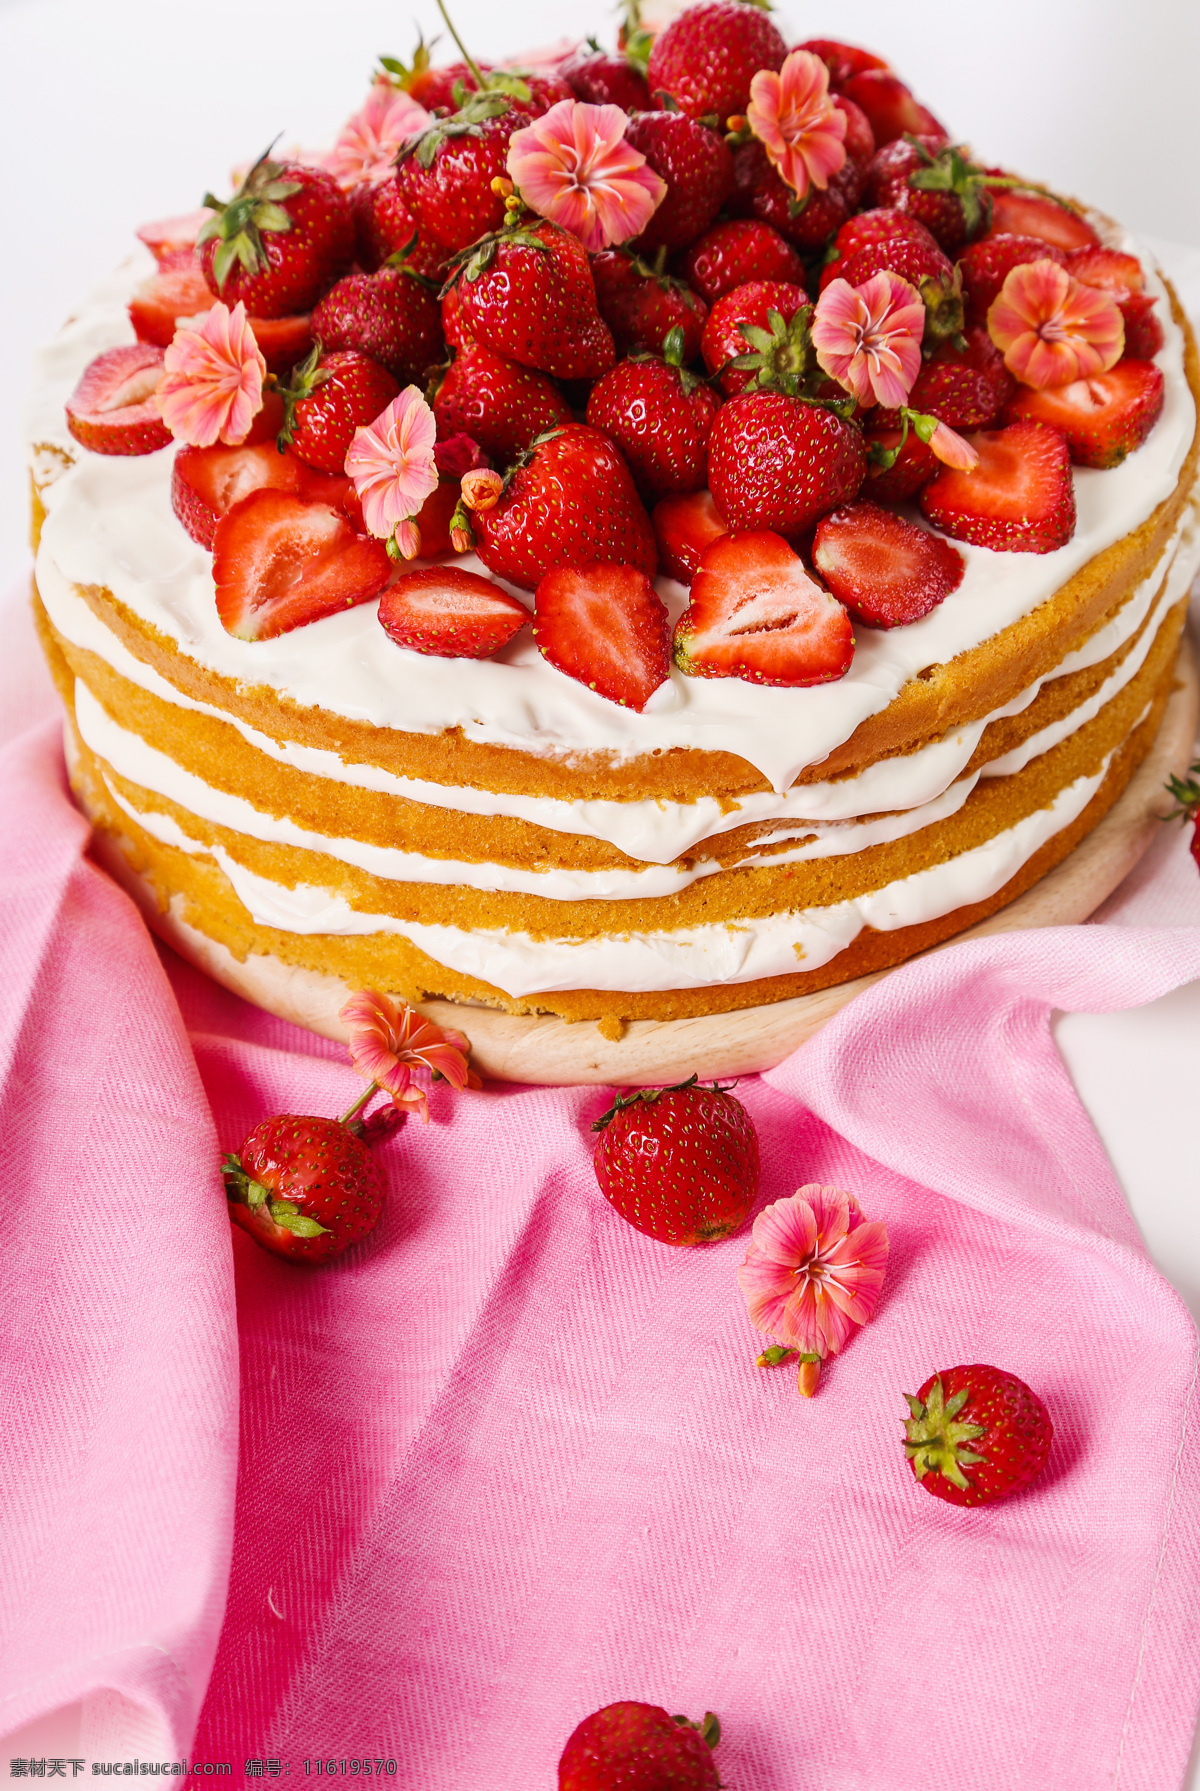 草莓 蛋糕 美味 草莓蛋糕 水果蛋糕 甜品 美食 食物摄影 生日蛋糕图片 餐饮美食